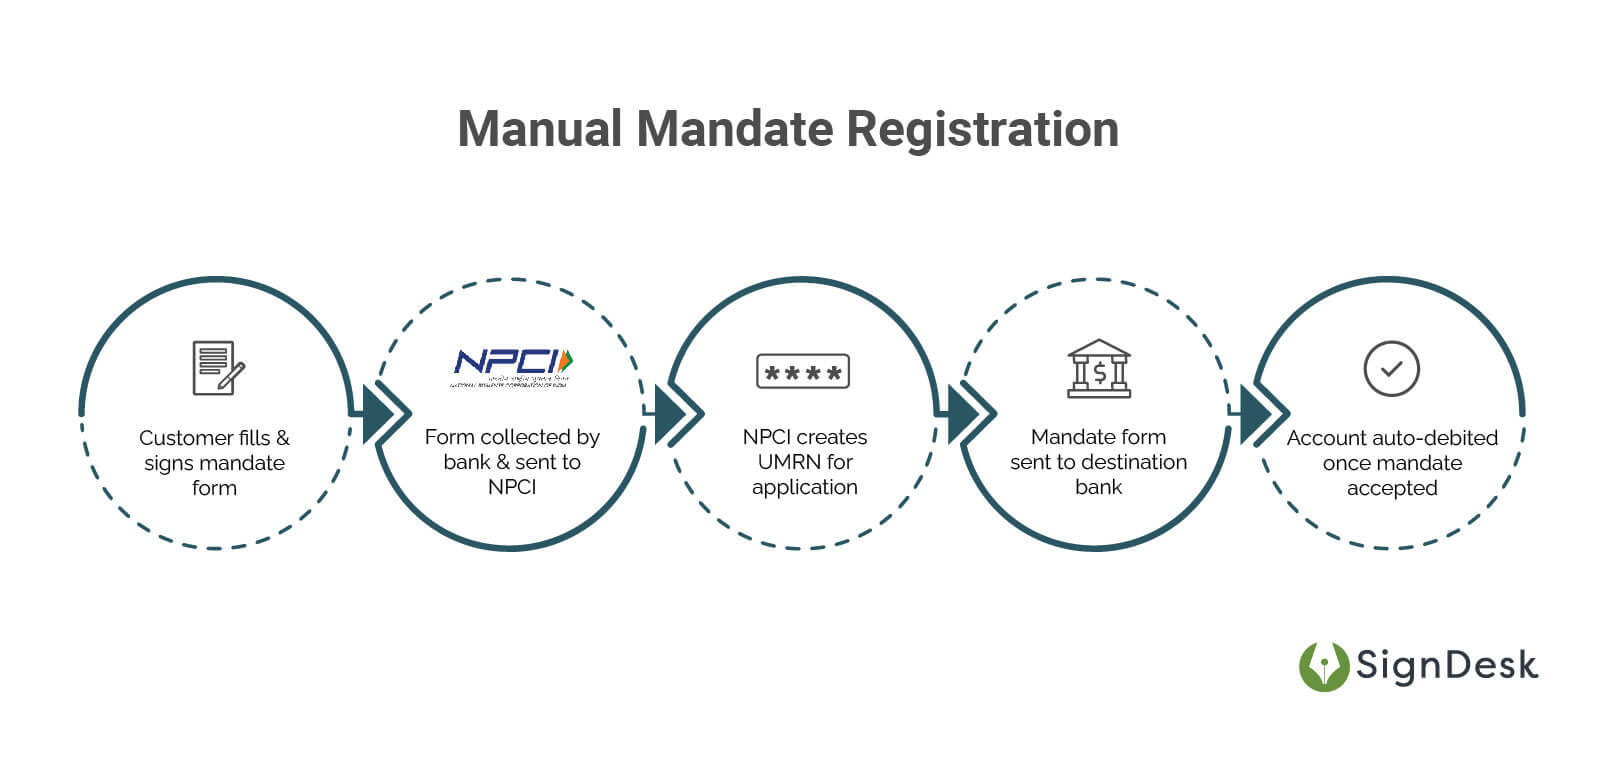 Manual mandate registration 